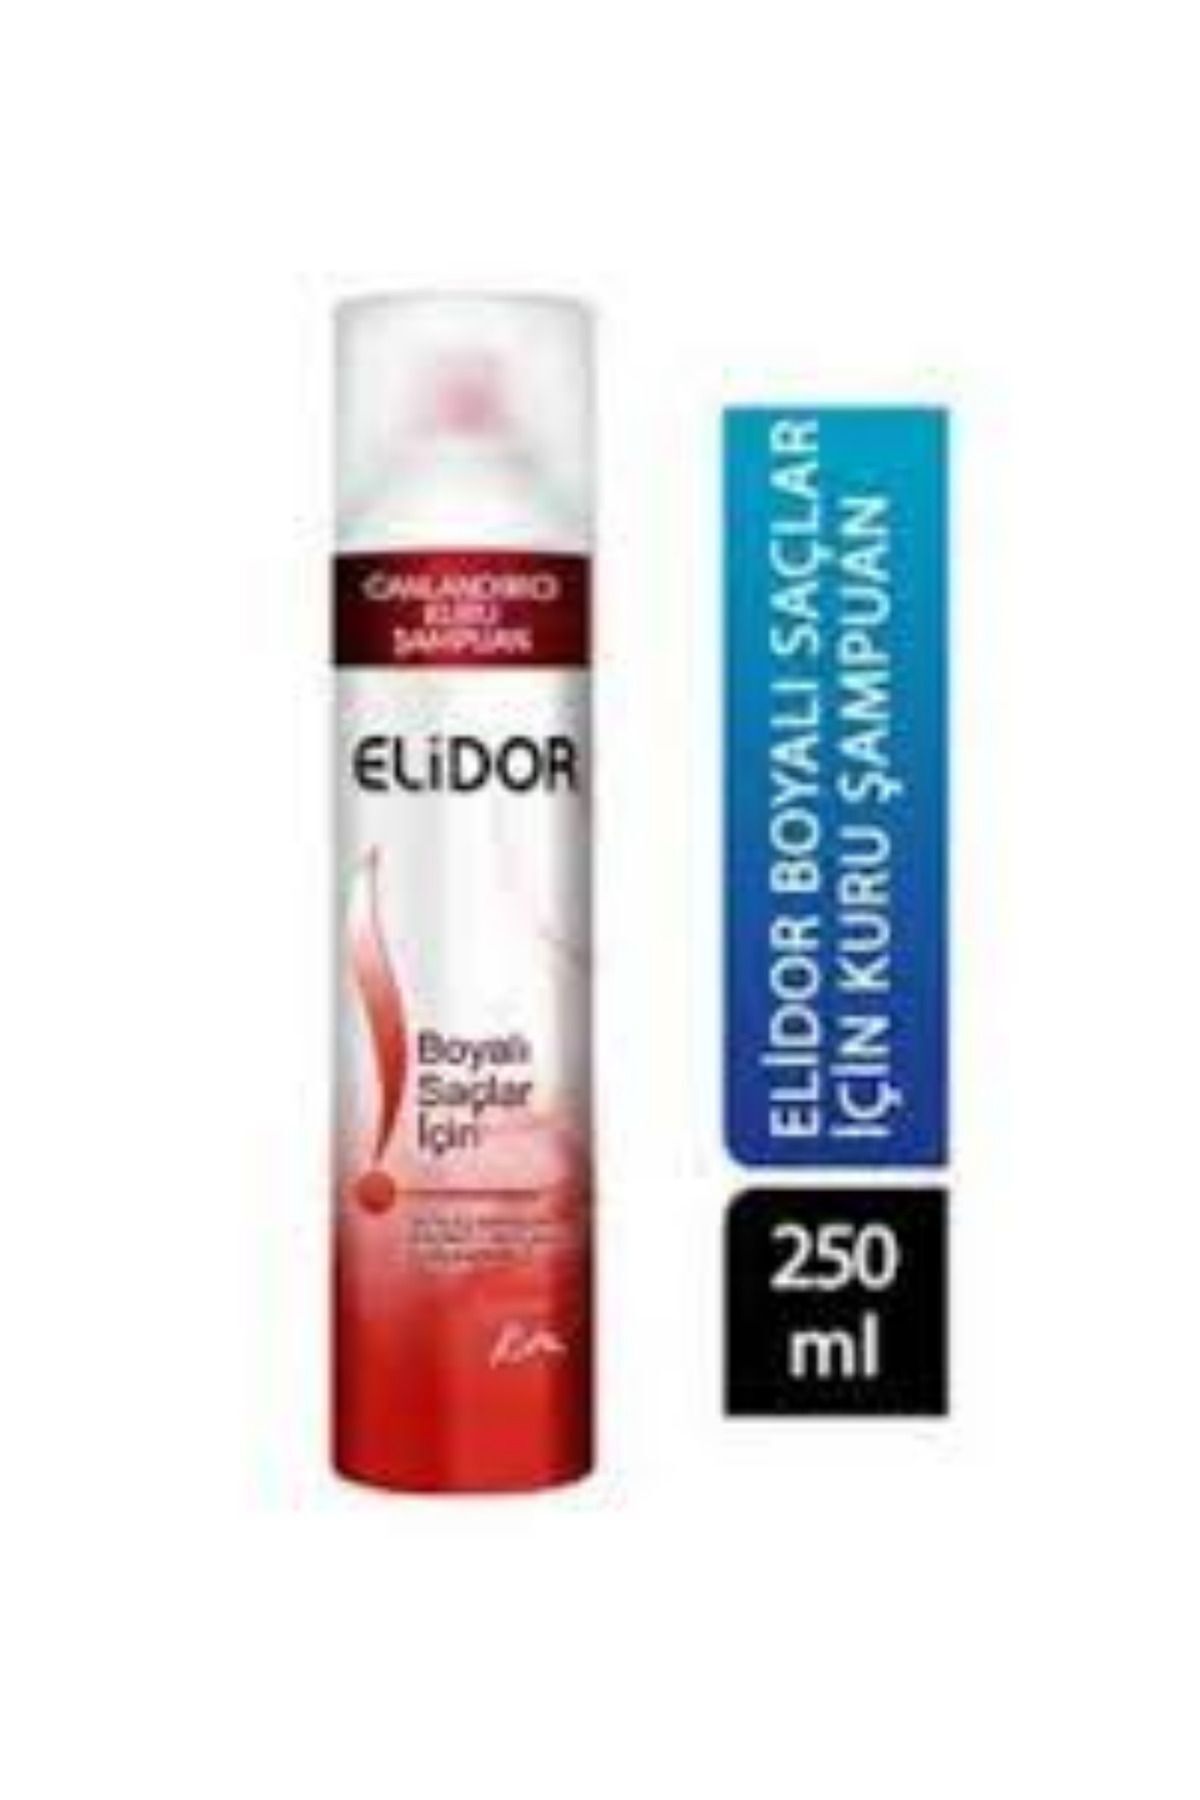 Elidor Boyalı Saçlar Kuru Şampuan 250 ml